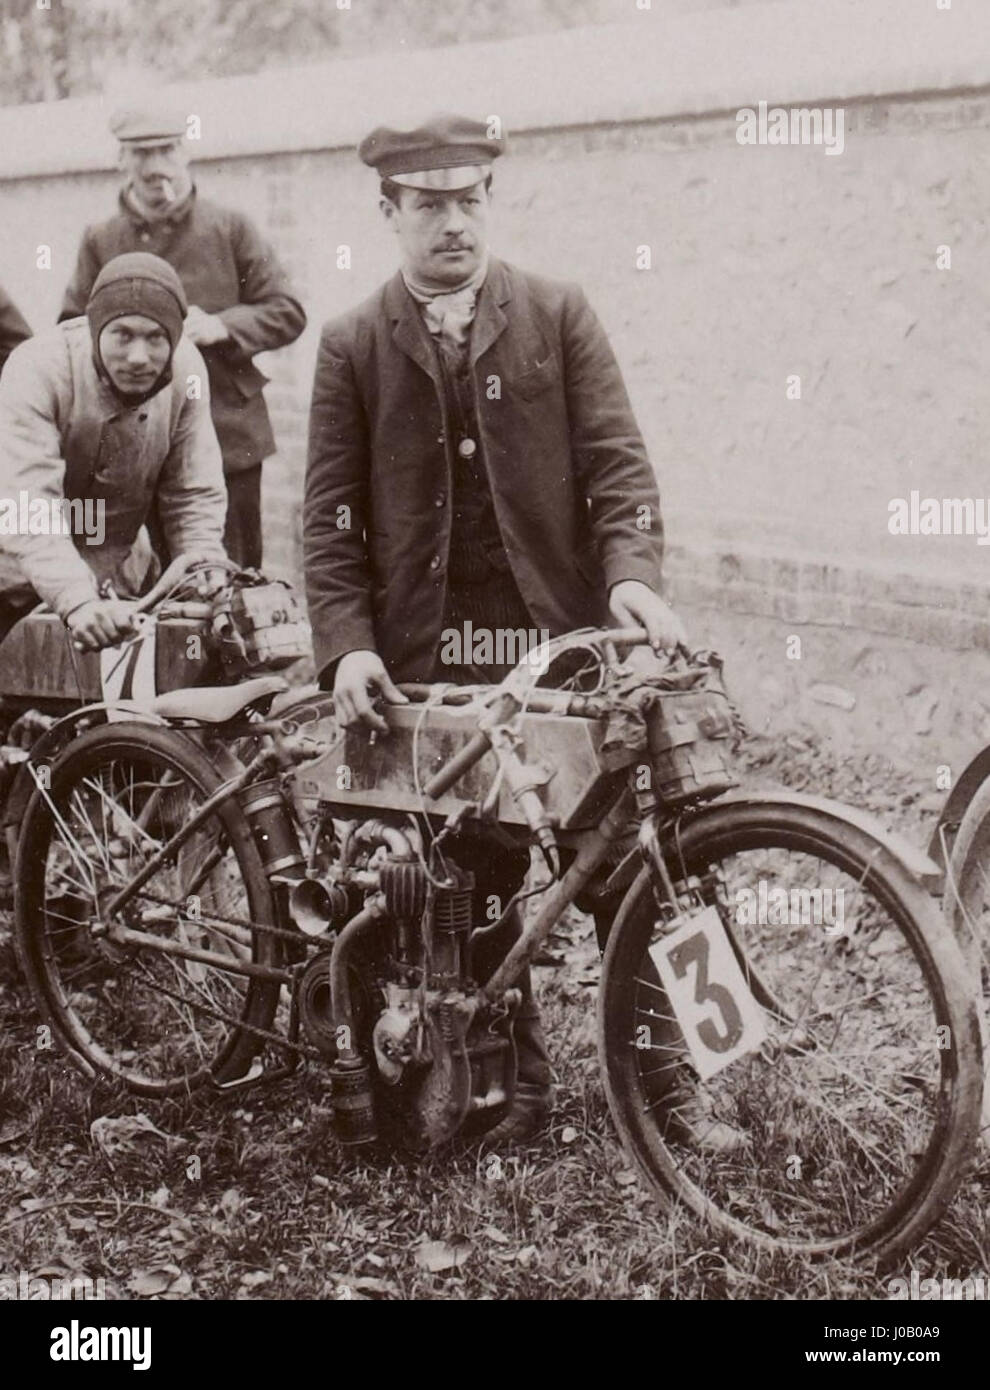 Giuseppe Collomb vainqueur sur Magali de la catégorie Motocyclettes E28593 de litro, à la Côte de Gaillon 1904 Foto Stock